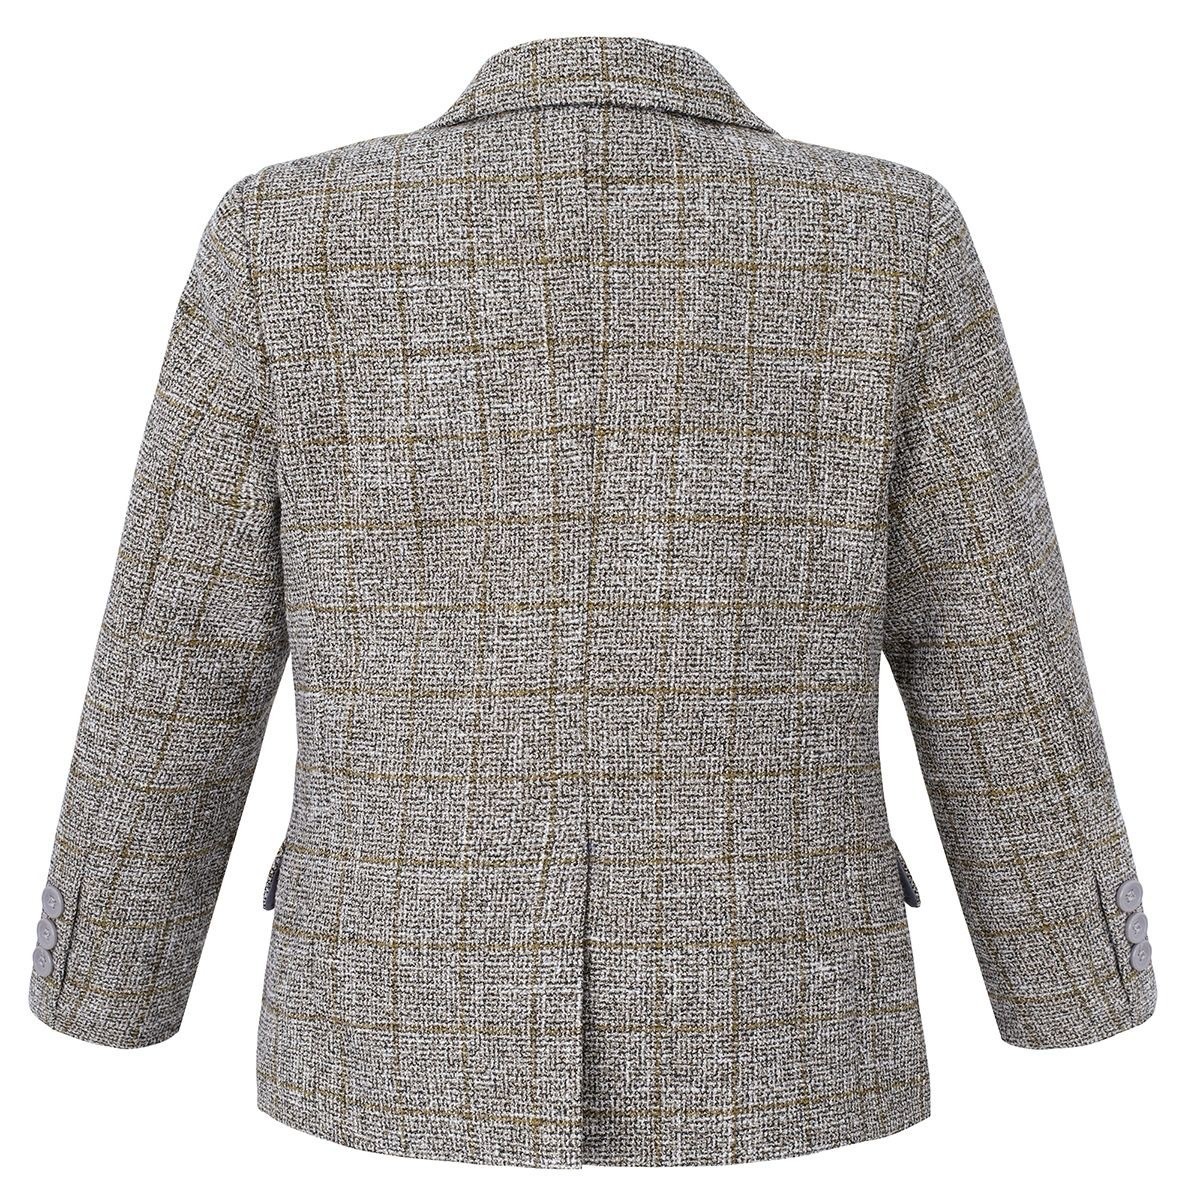 Jungen-Baumwoll-Tweed-ähnlicher Karo-Tailored-Fit-Blazer - Beige